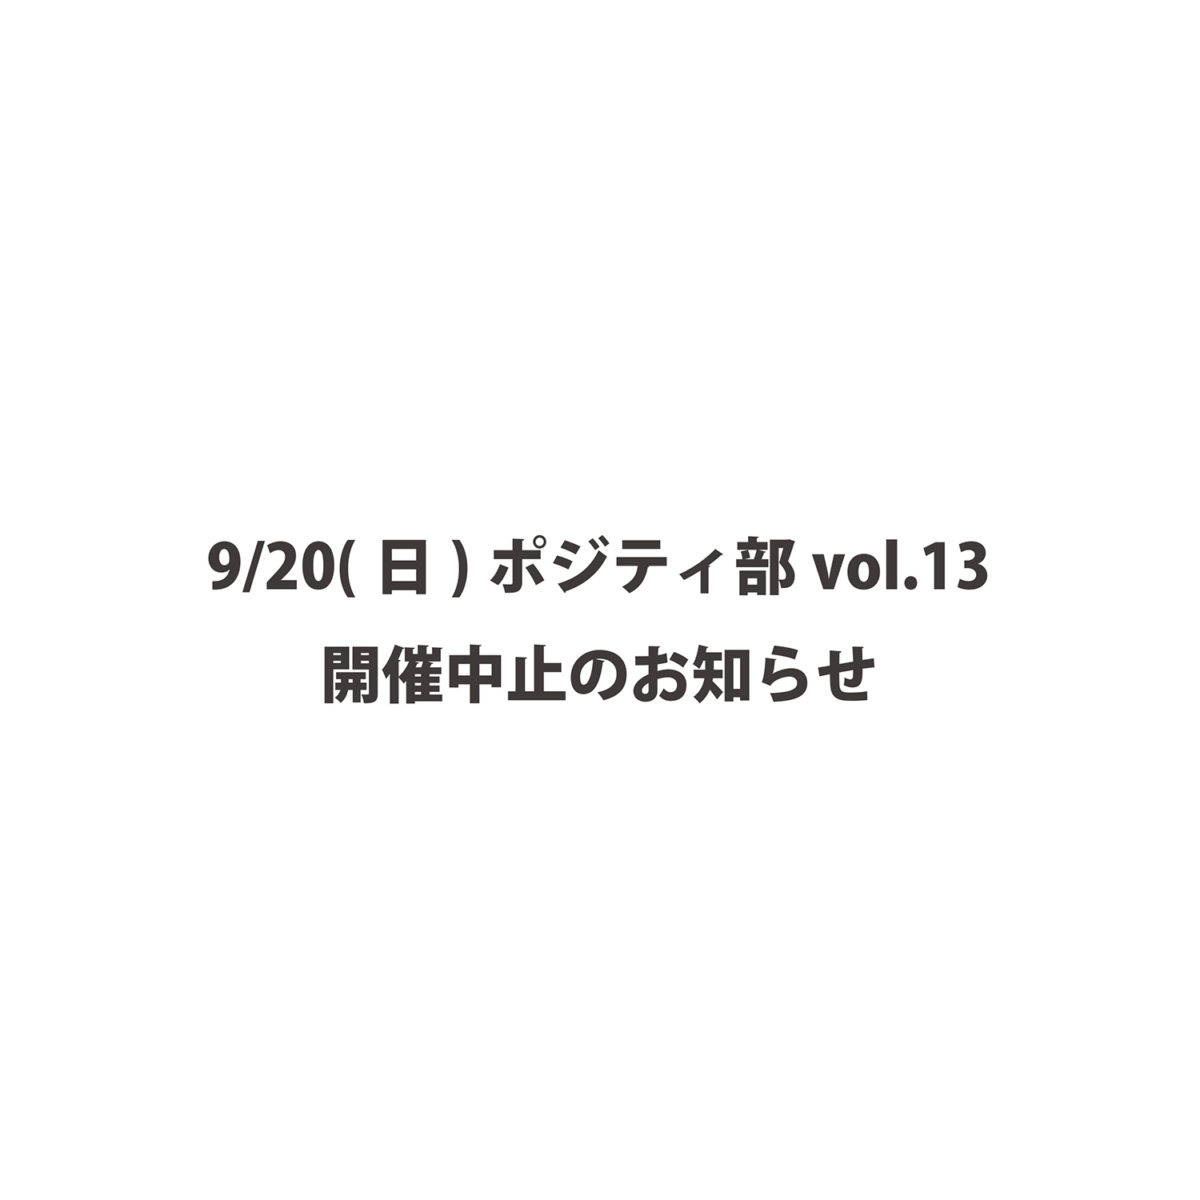 9/20(日)ポジティ部 vol.13中止について